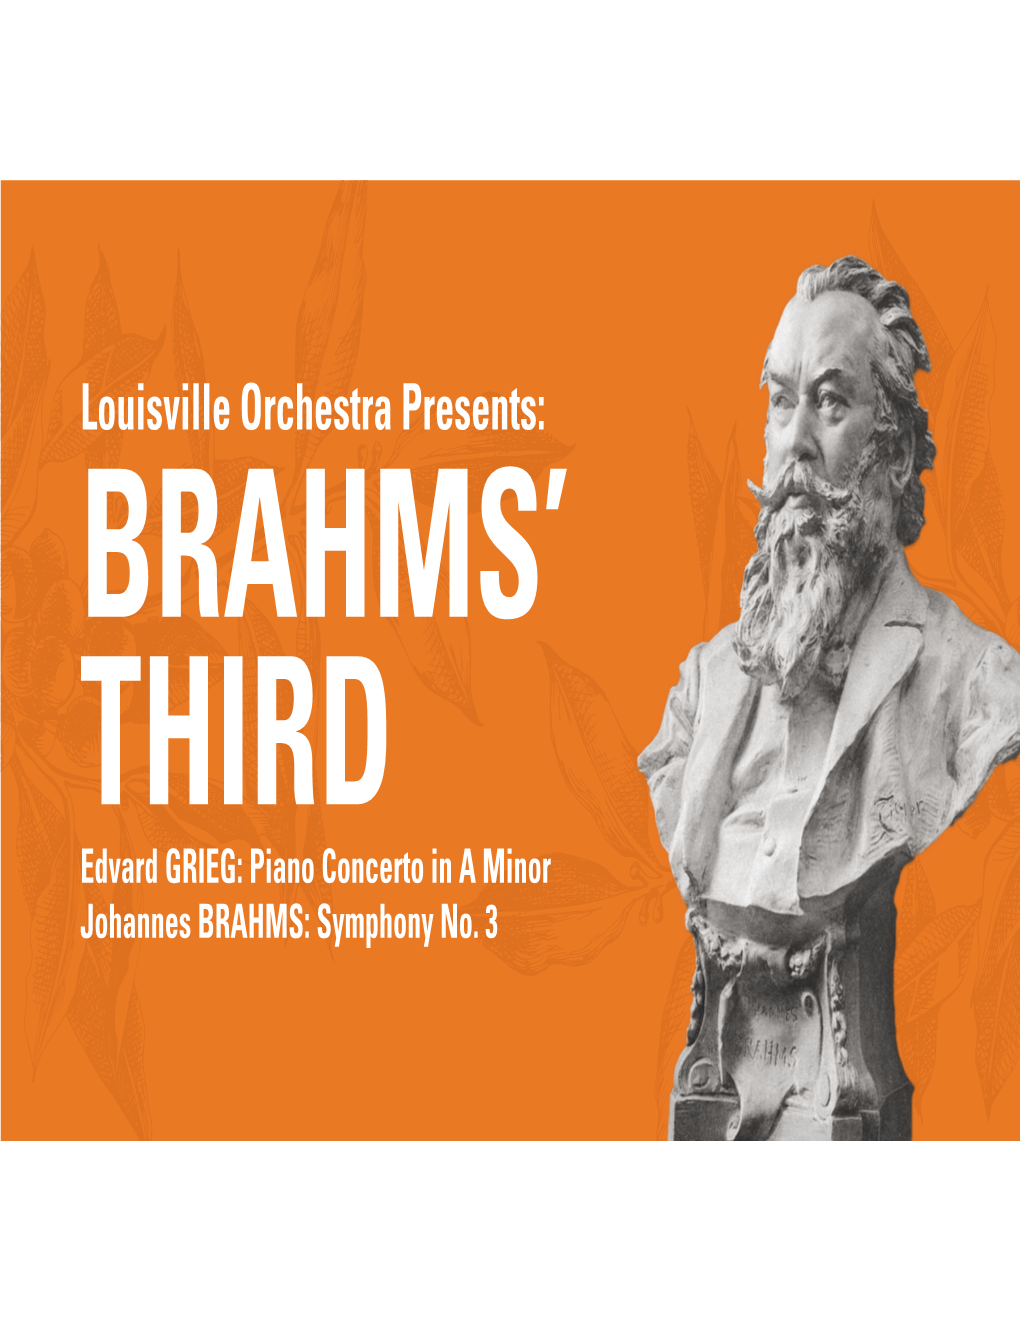 Johannes BRAHMS: Symphony No